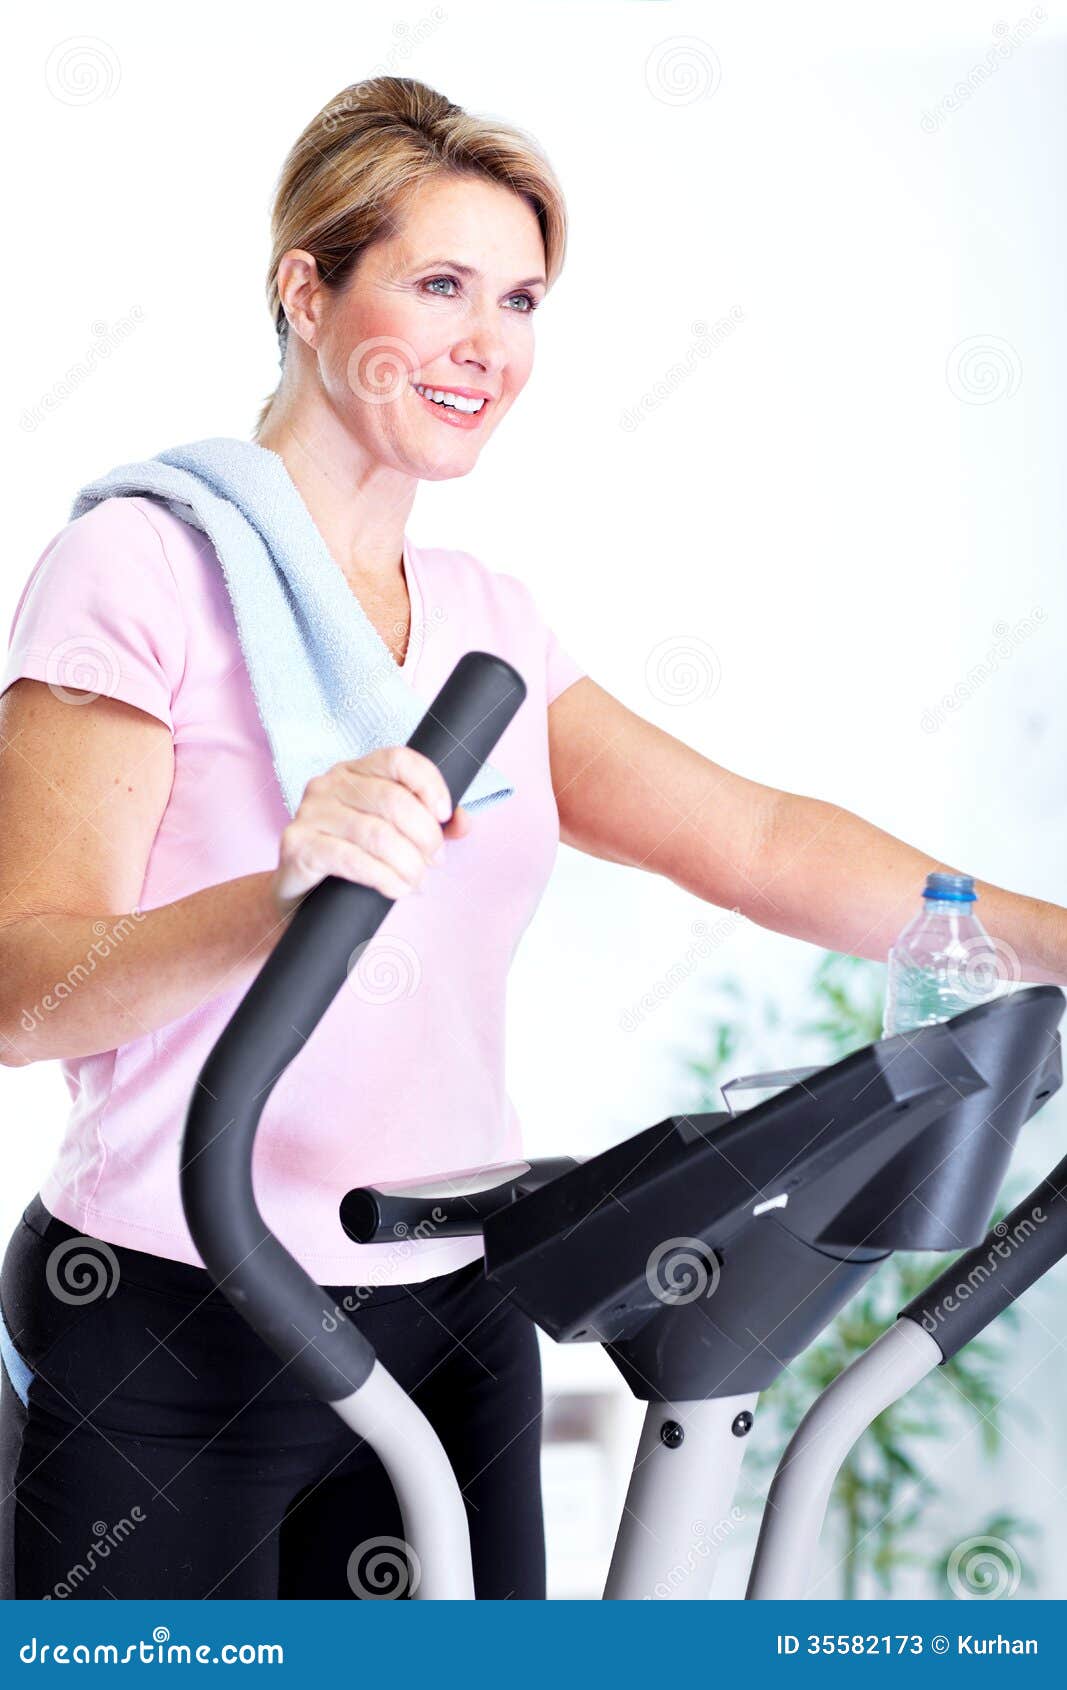 Senior Woman Doing Exercise. Stock Photos - Image: 35582173